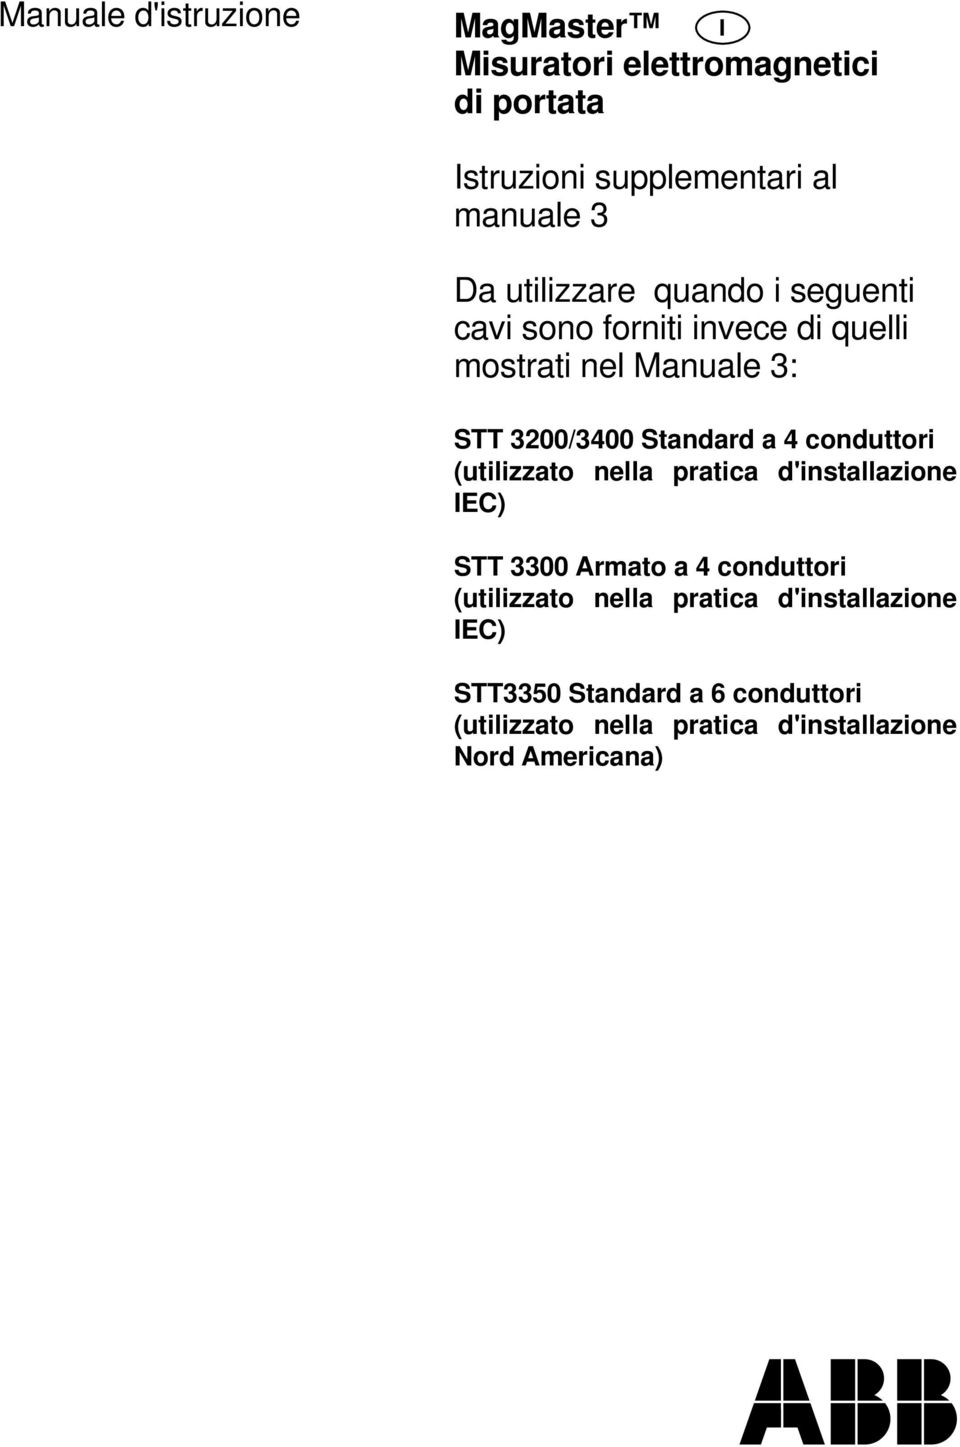 4 conduttori (utilizzato nella pratica d'installazione IEC) STT 3300 Armato a 4 conduttori (utilizzato nella